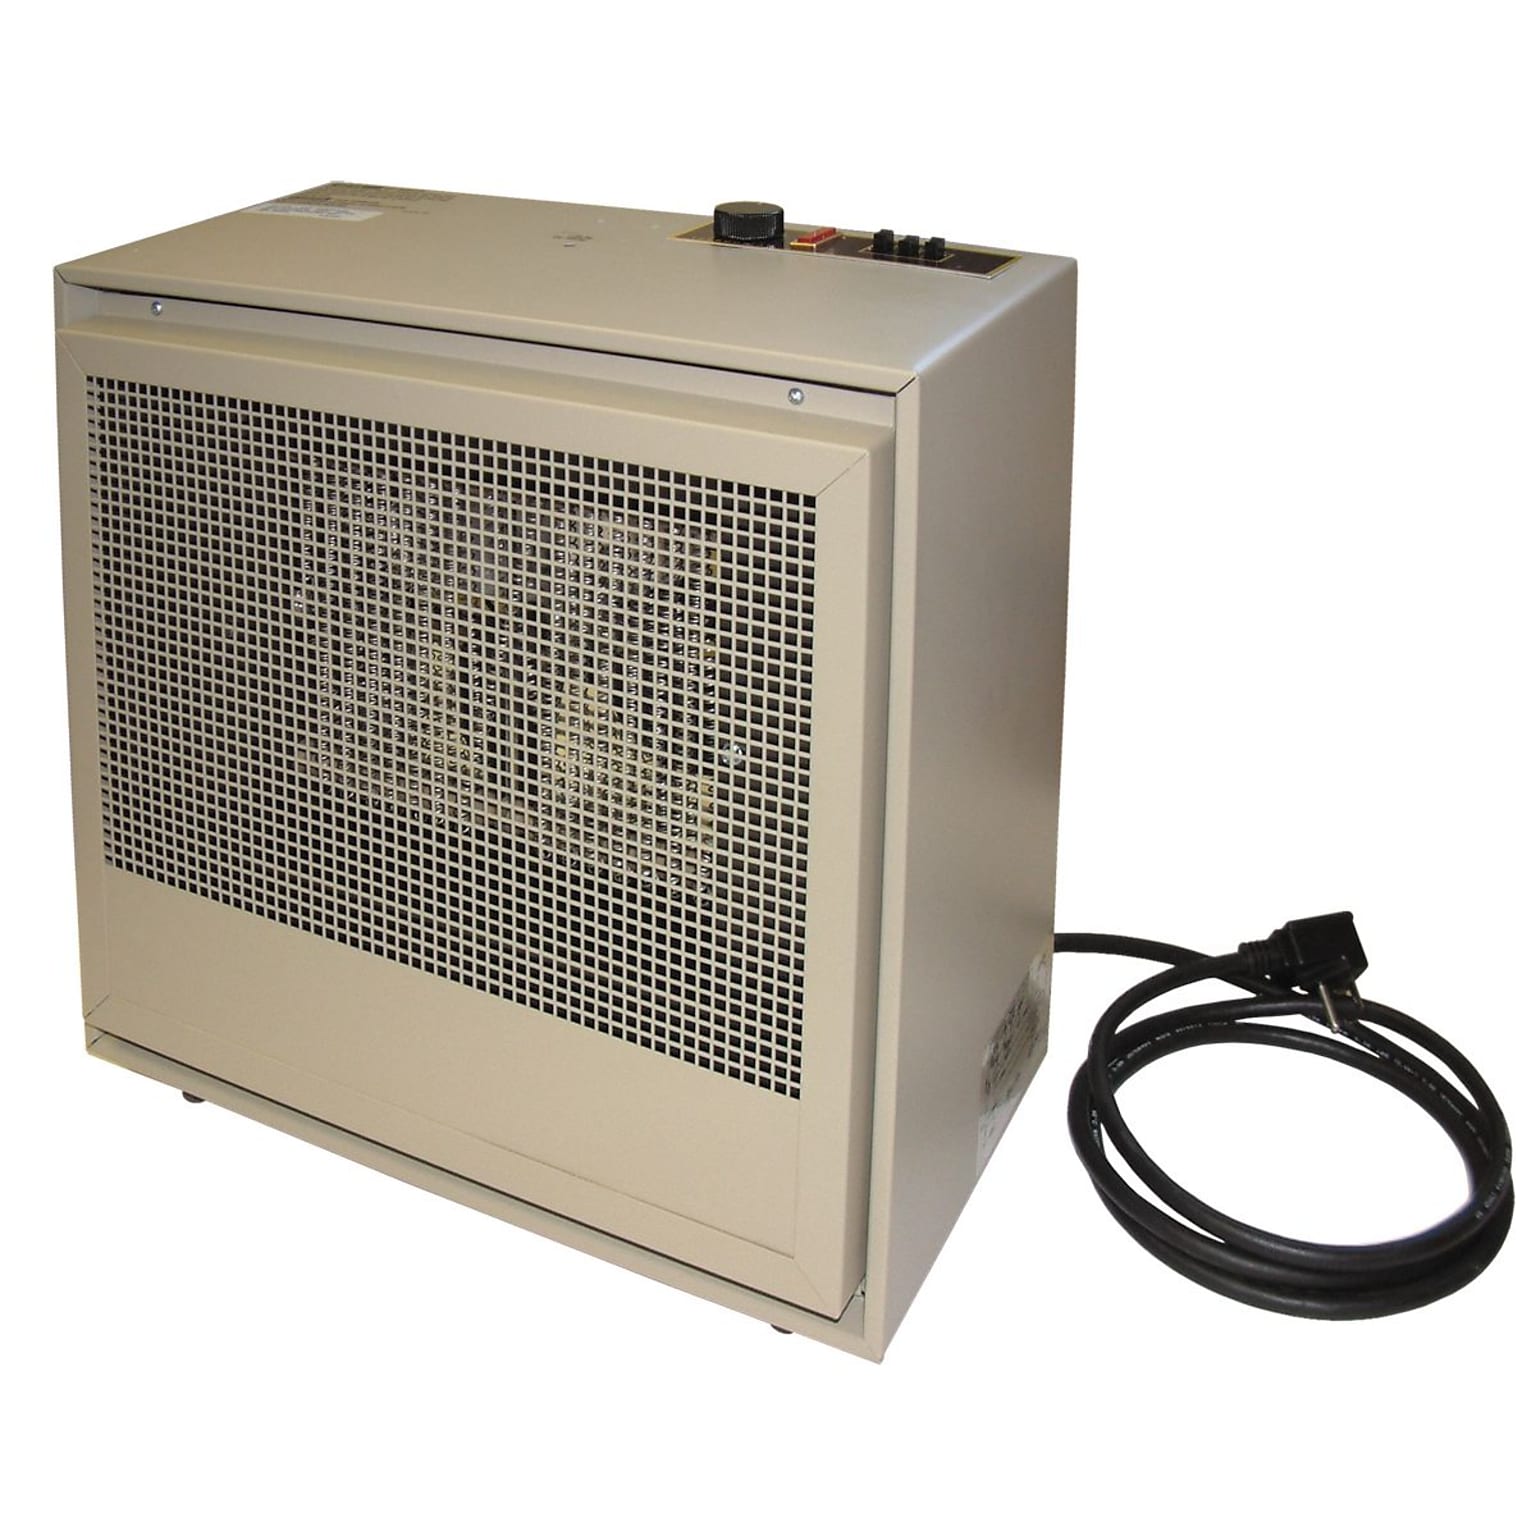 TPI 3840-Watt 13106 BTU Portable Indoor/Outdoor Electric Heater, Beige (H474TMC)